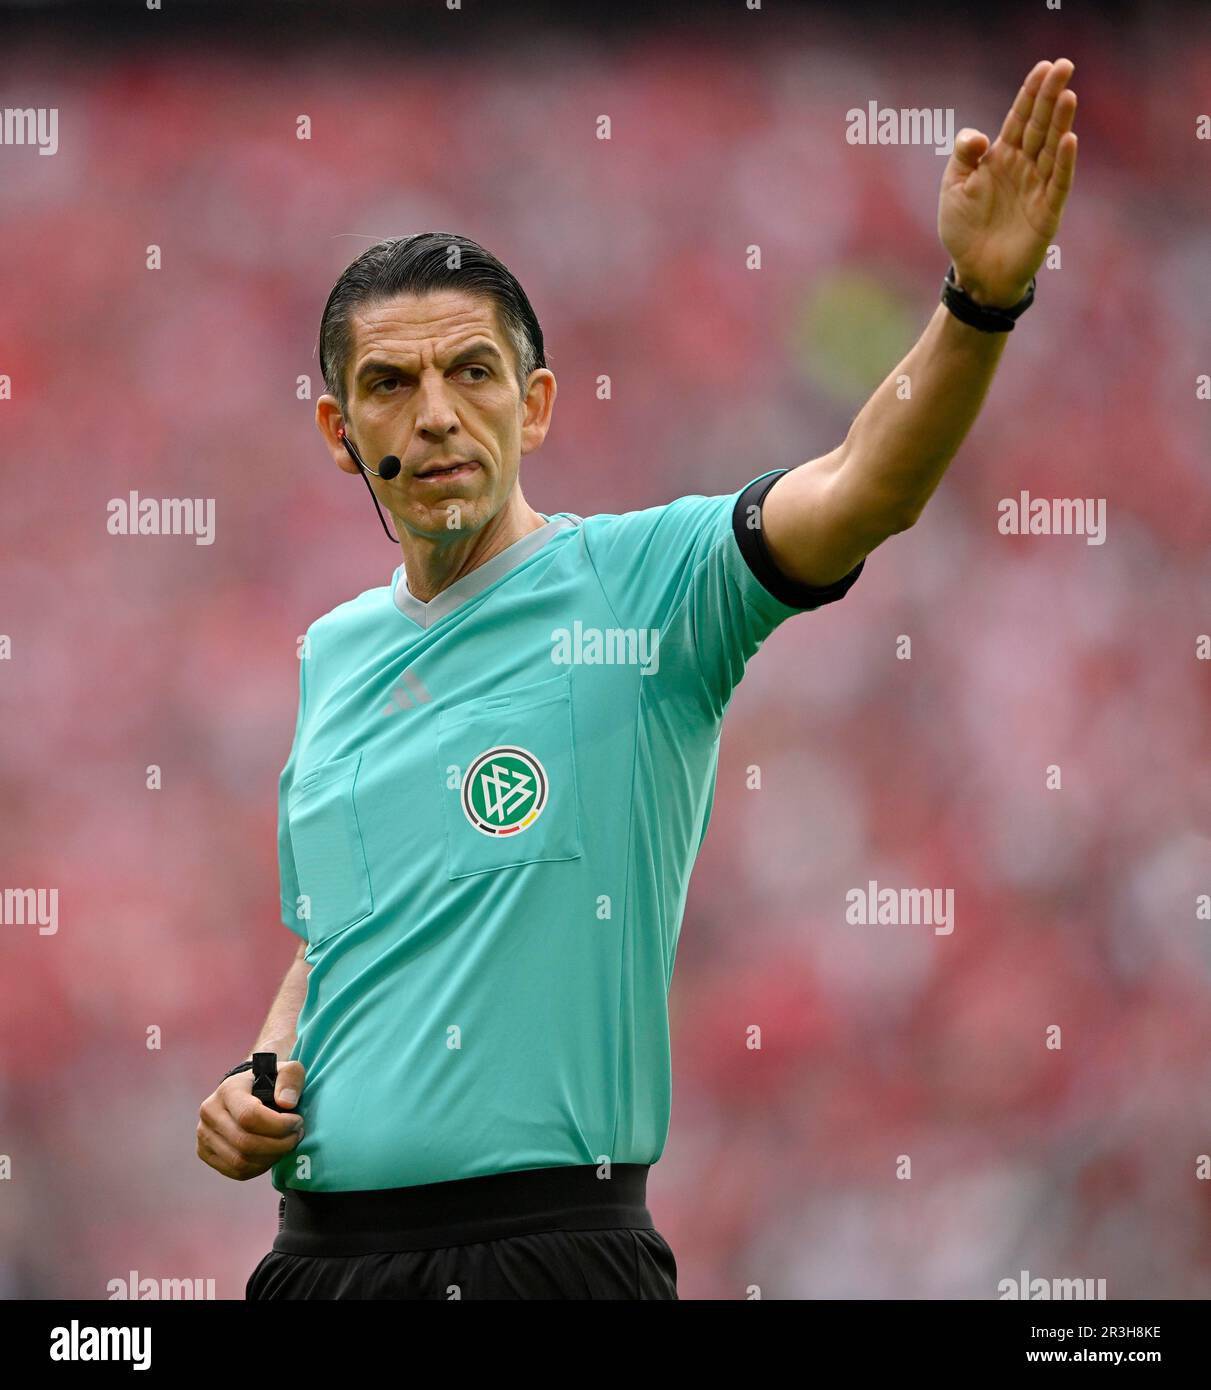 Referee Deniz Aytekin, gesture, gesture, Allianz Arena, Munich, Bayern, Germany Stock Photo